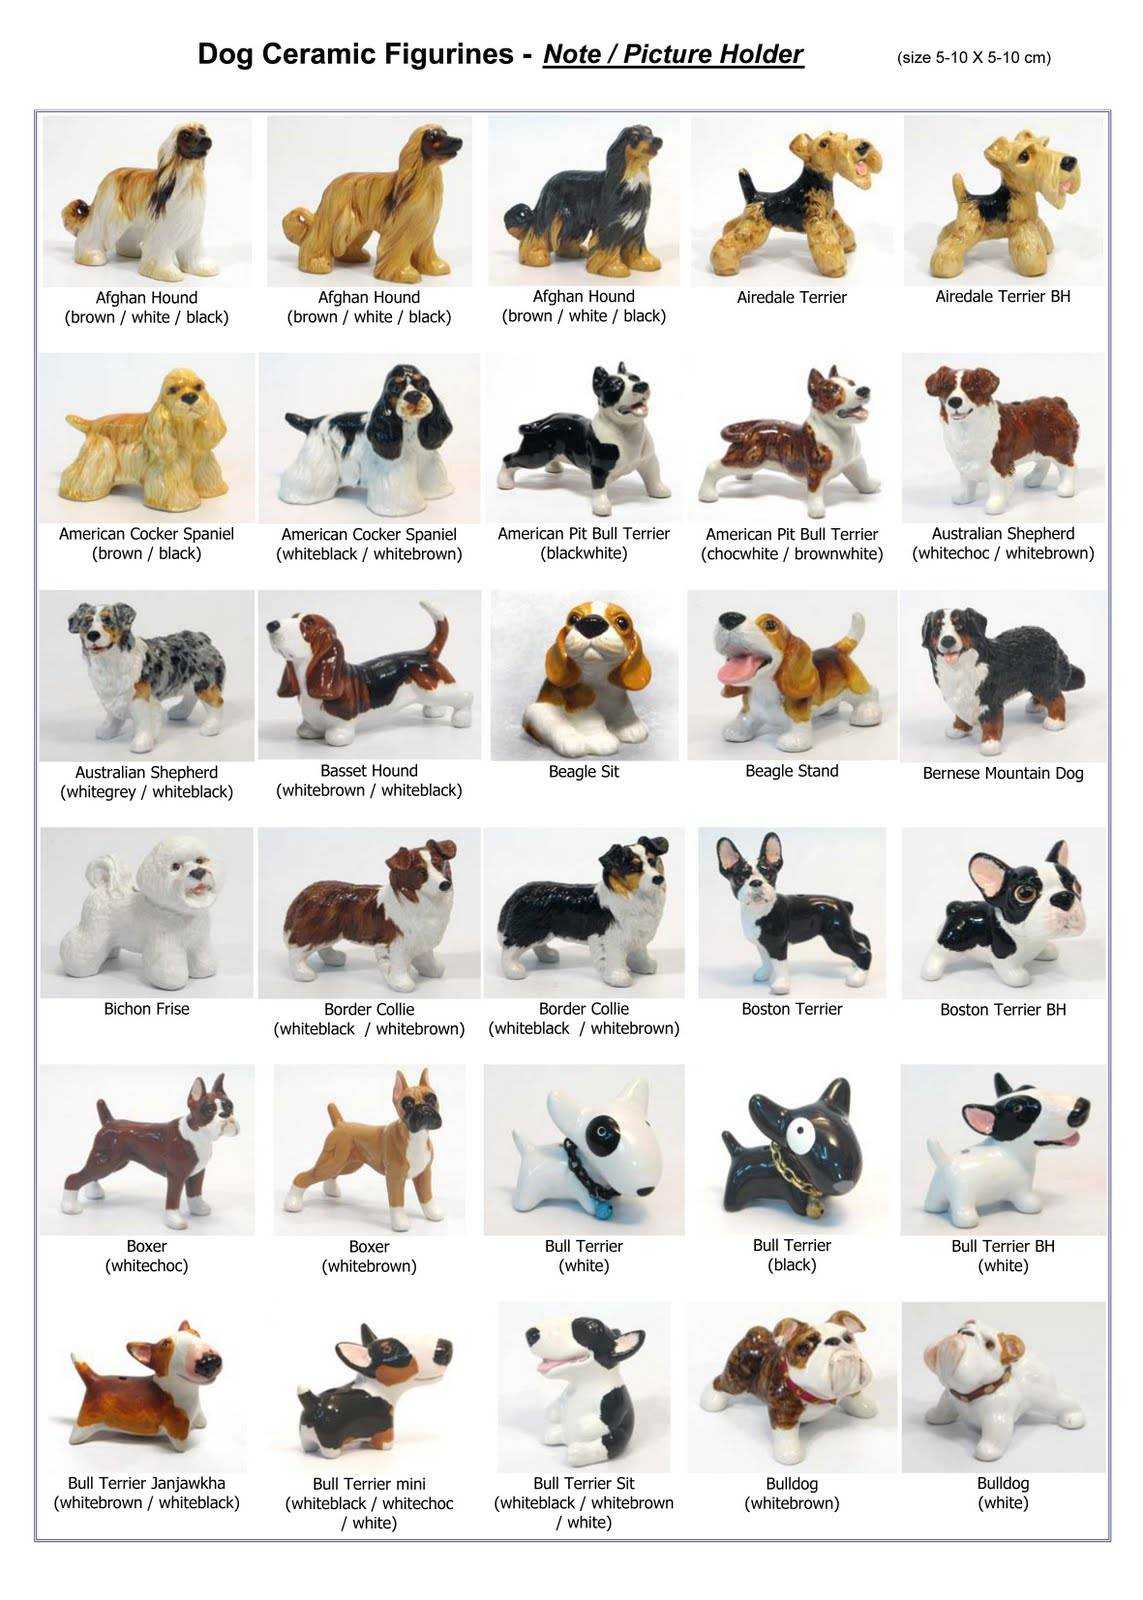 Породы другое название. Мелкие породы собак перечень. Список маленьких пород собак. Порода собак Меркурий. Название пород маленьких собак.